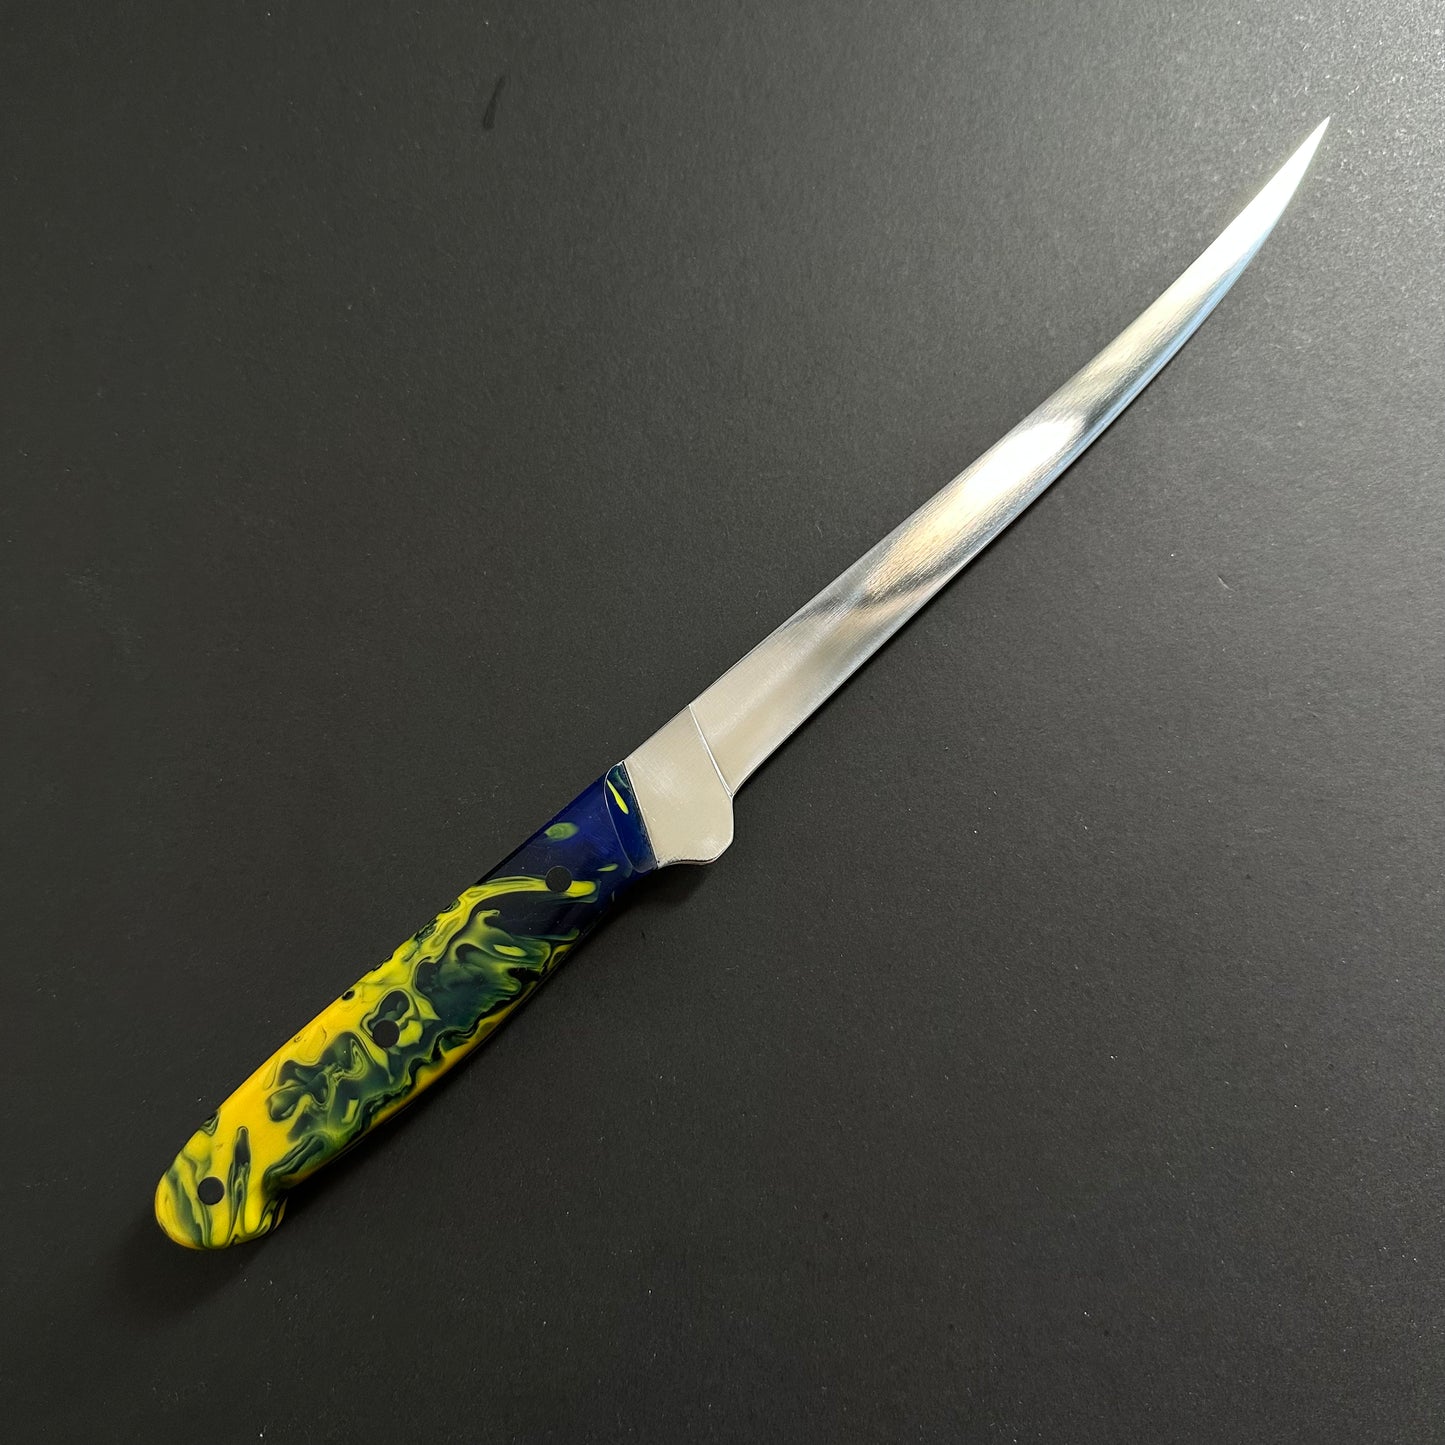 7" Fillet Knife - No. 2216